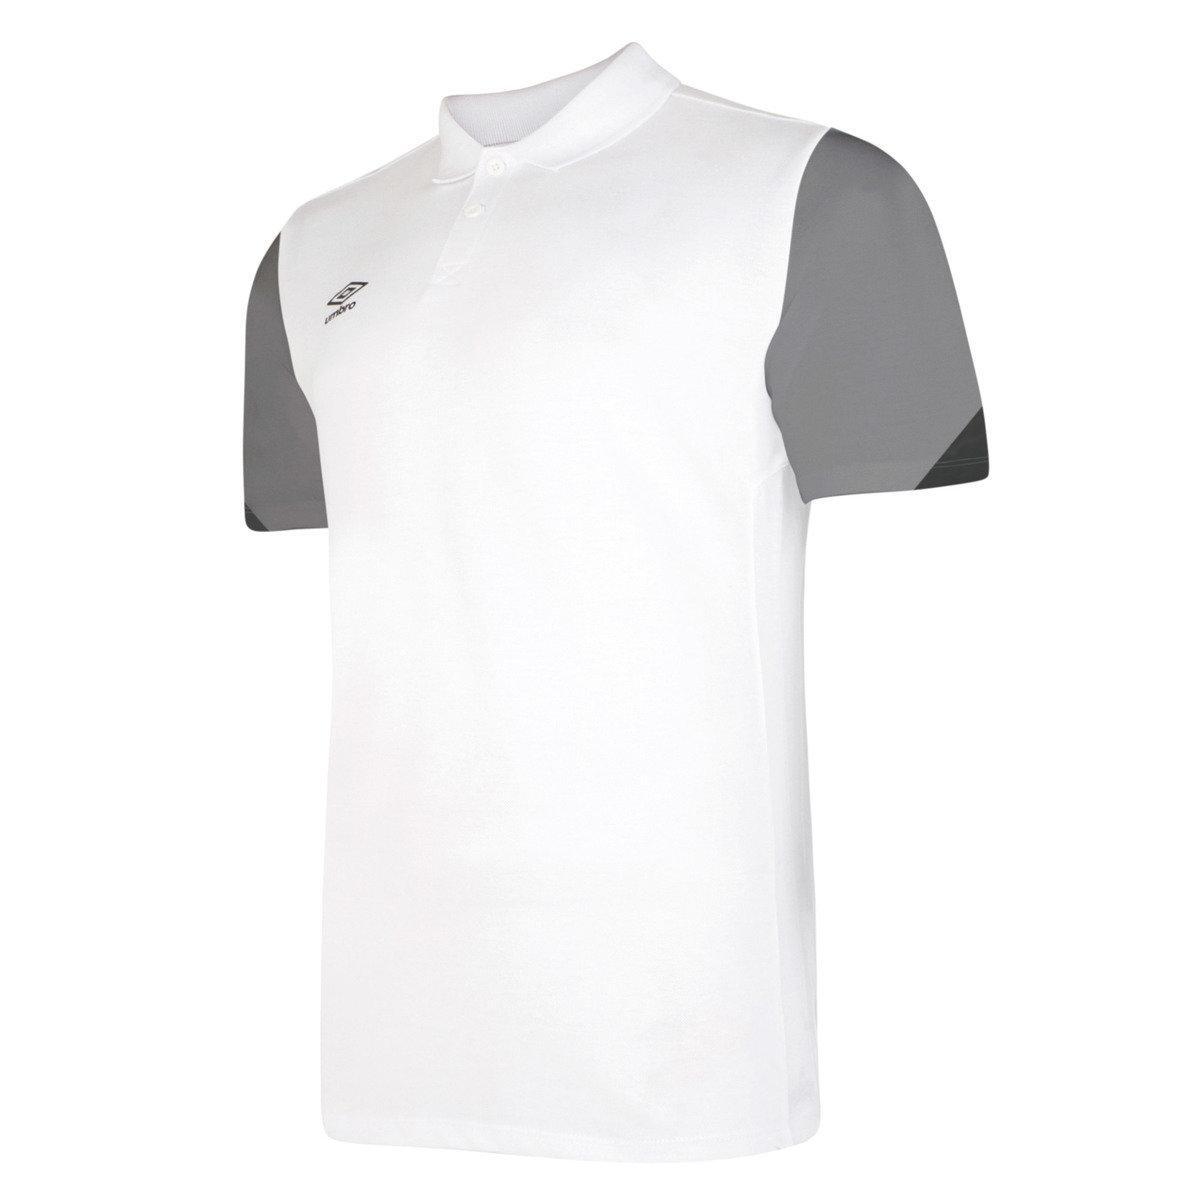 UMBRO Childrens/Kids Total Training Polo Shirt (White/Titanium/Black)